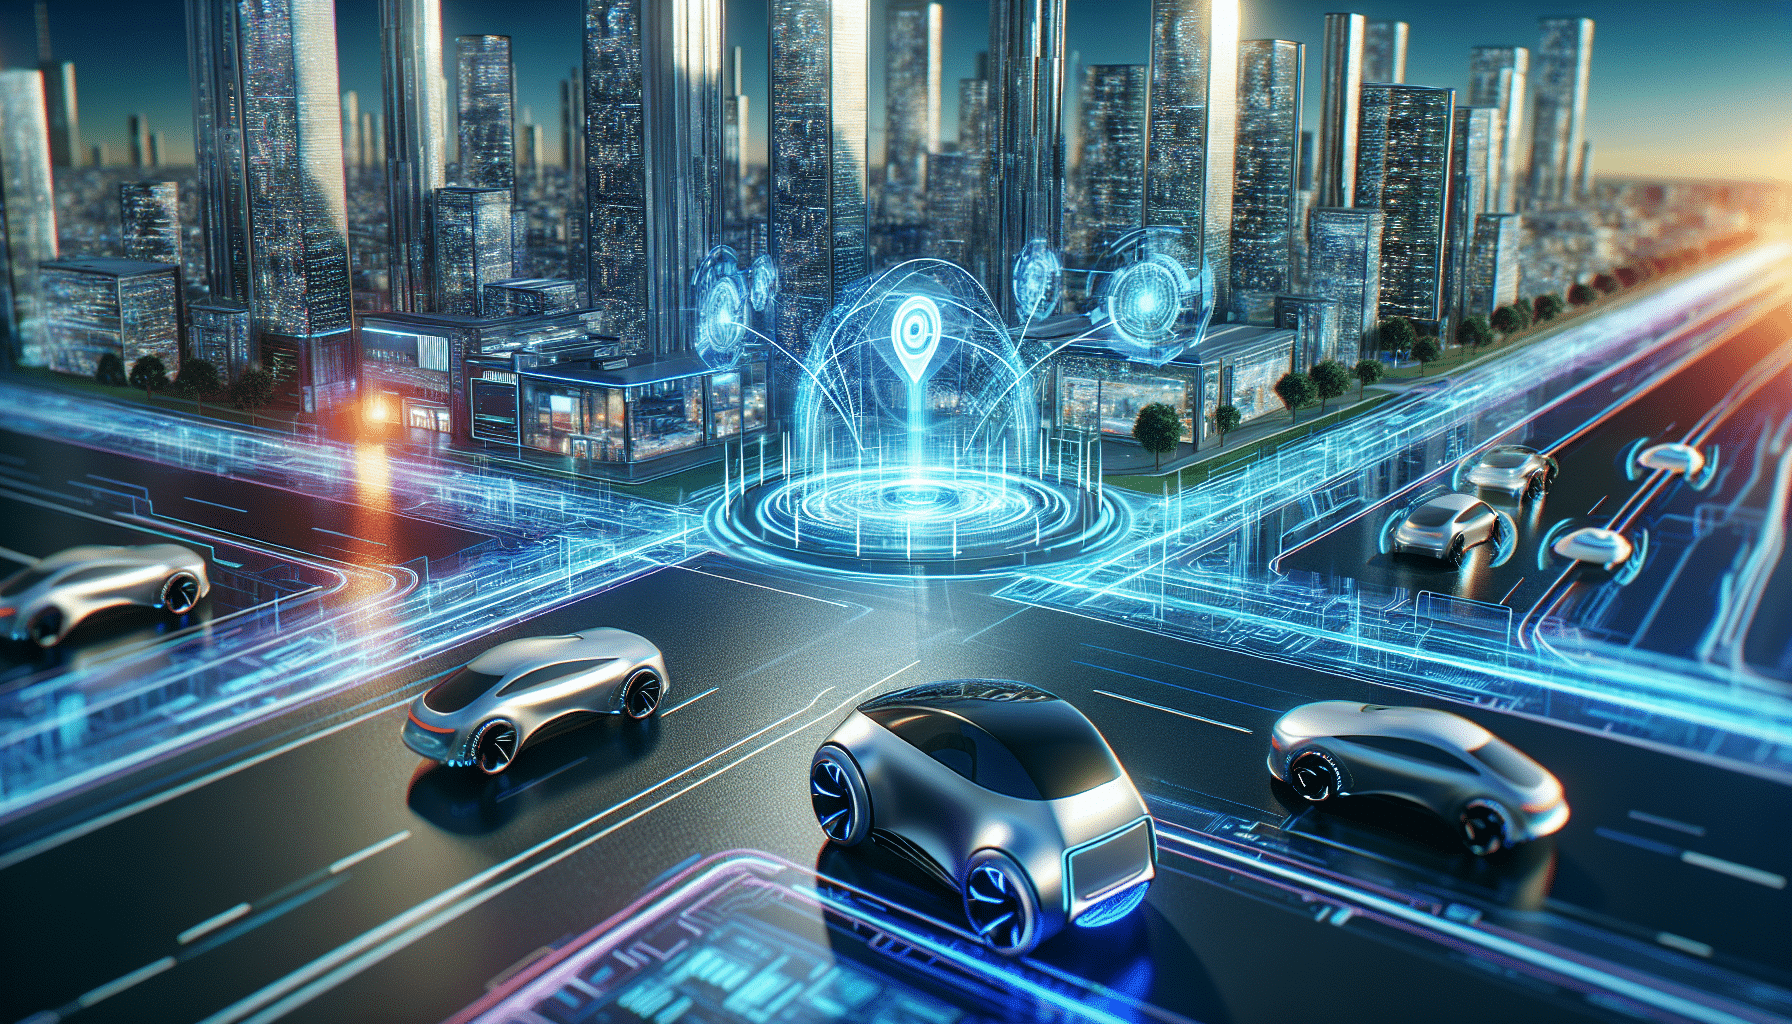 nodar se posiciona como pionera en software para vehículos automáticos, ofreciendo soluciones innovadoras y de vanguardia para la conducción autónoma.